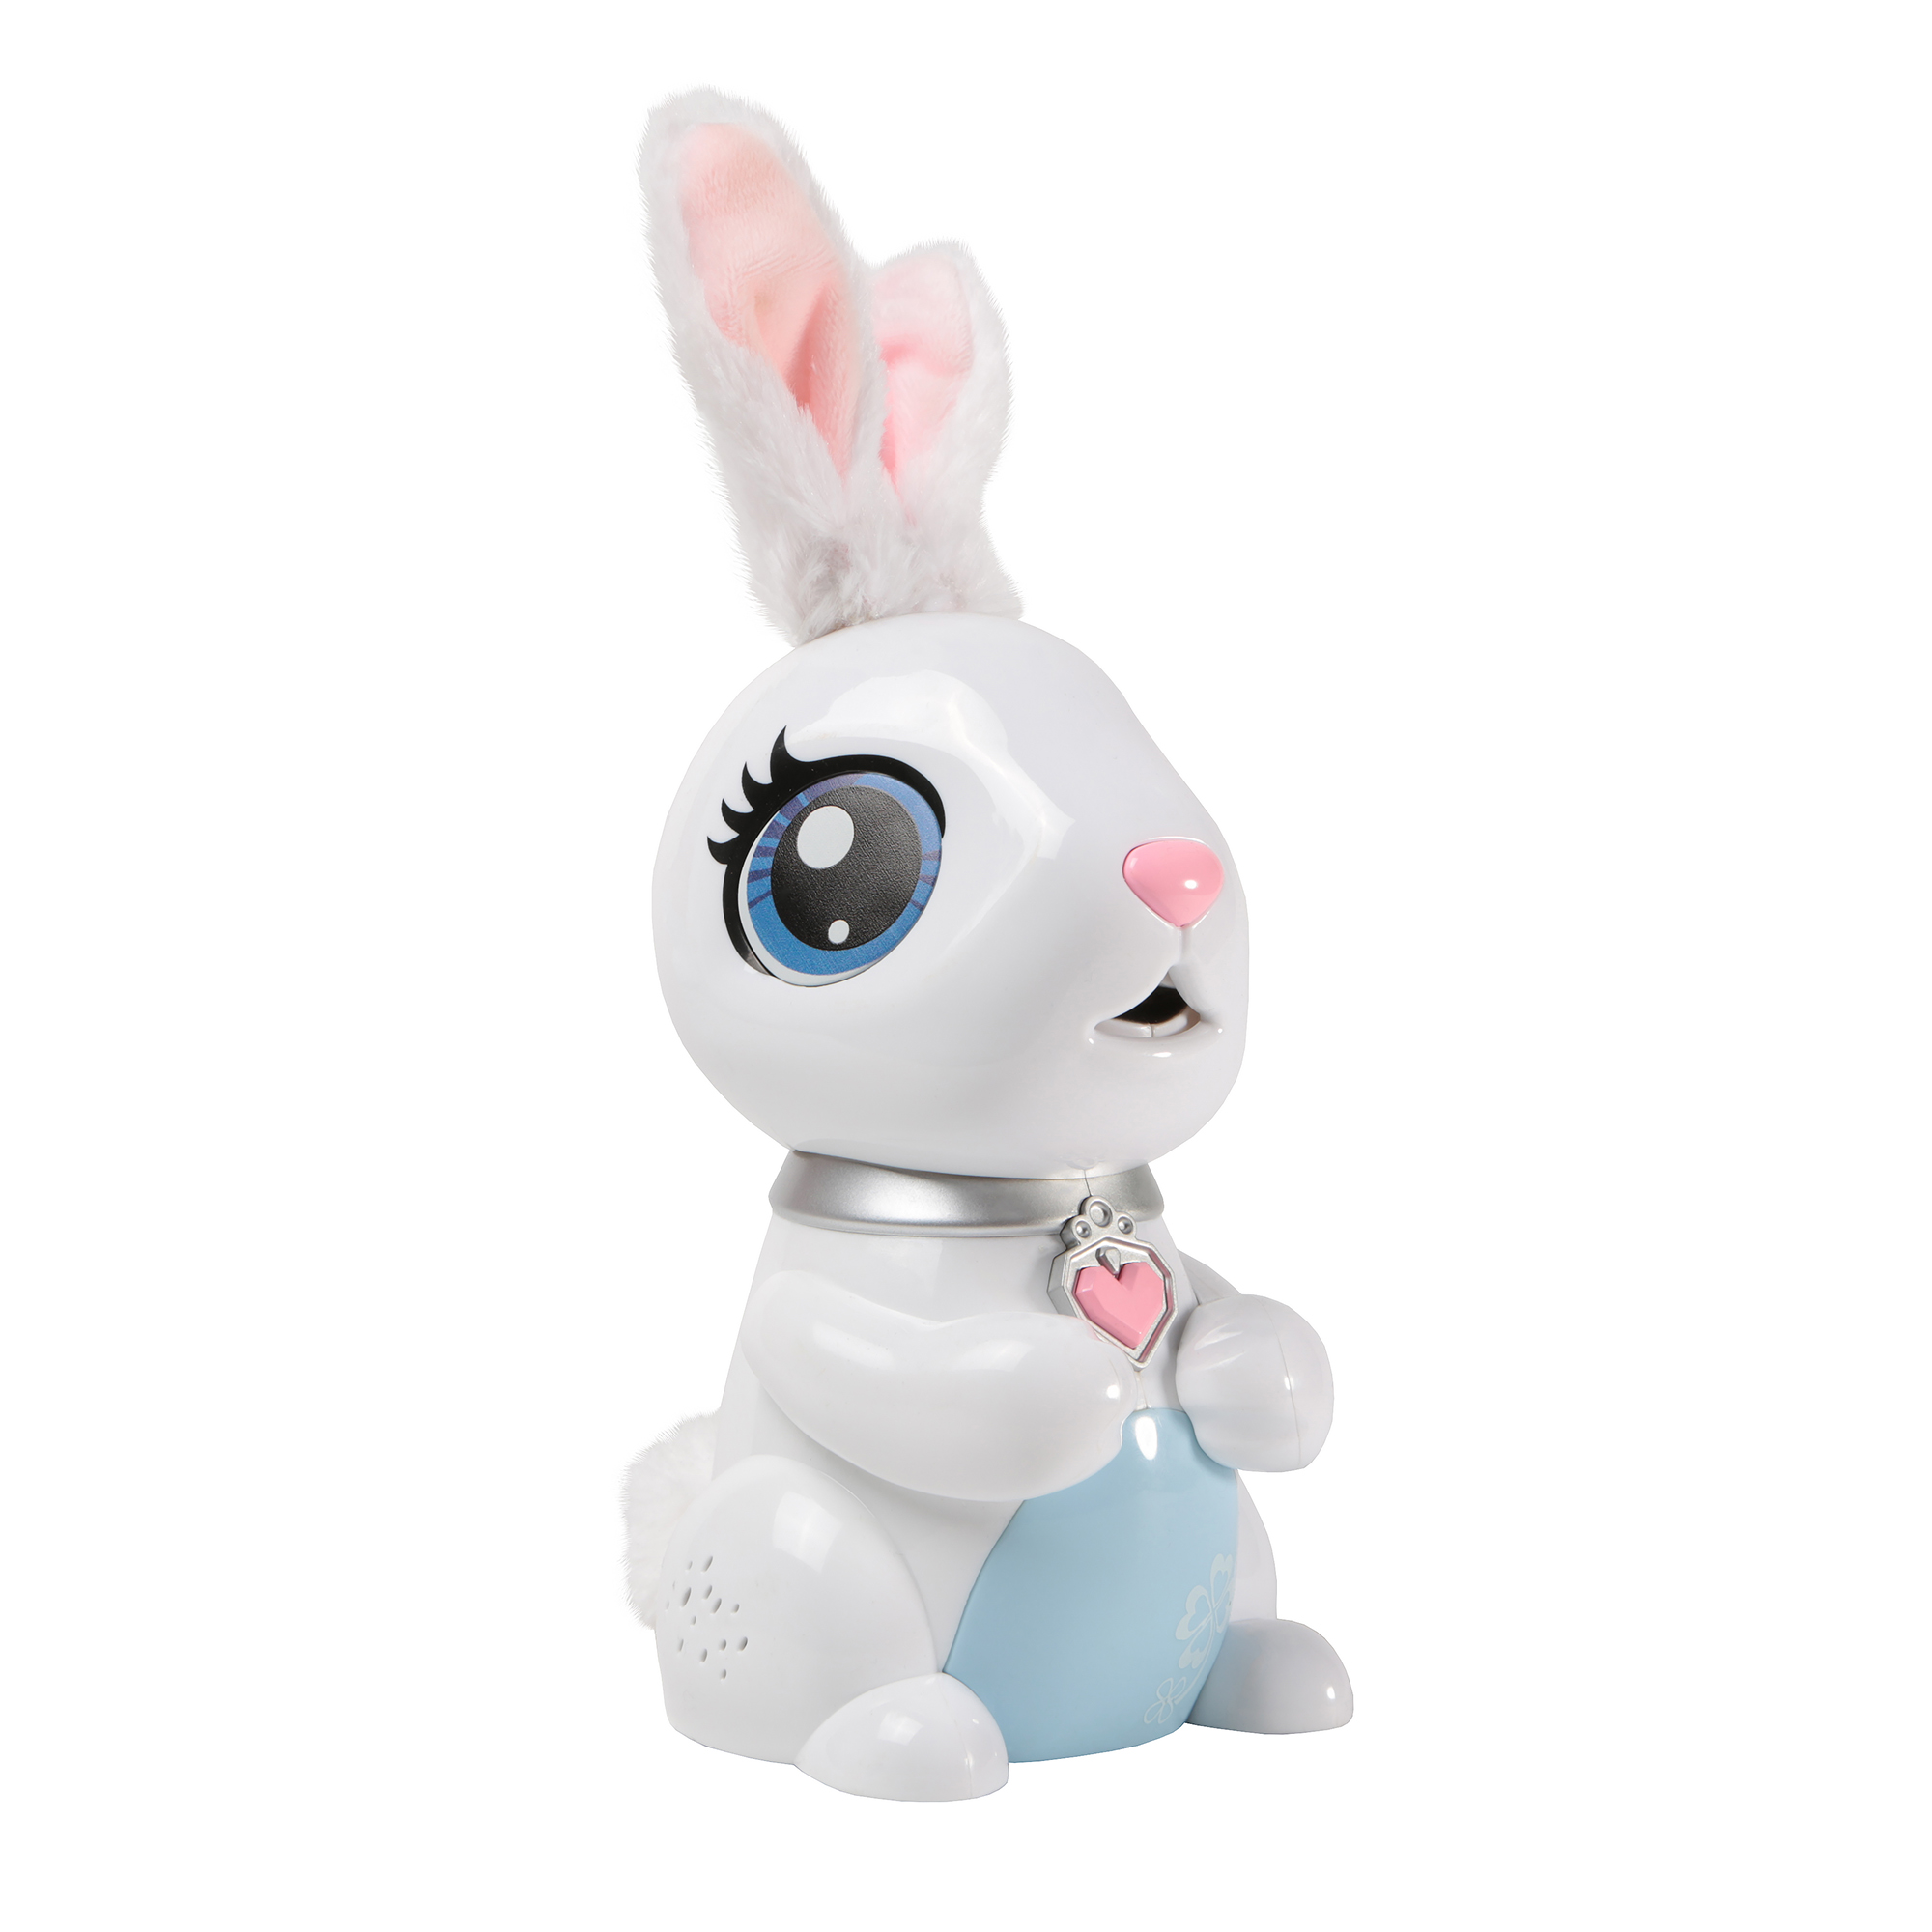 Голодный кролик пермь. Интерактивный кролик. Голодный кролик. Интерактивный кролик Милки. Радиоклуб интерактивный кролик "умный питомец" ZYB-b3310.